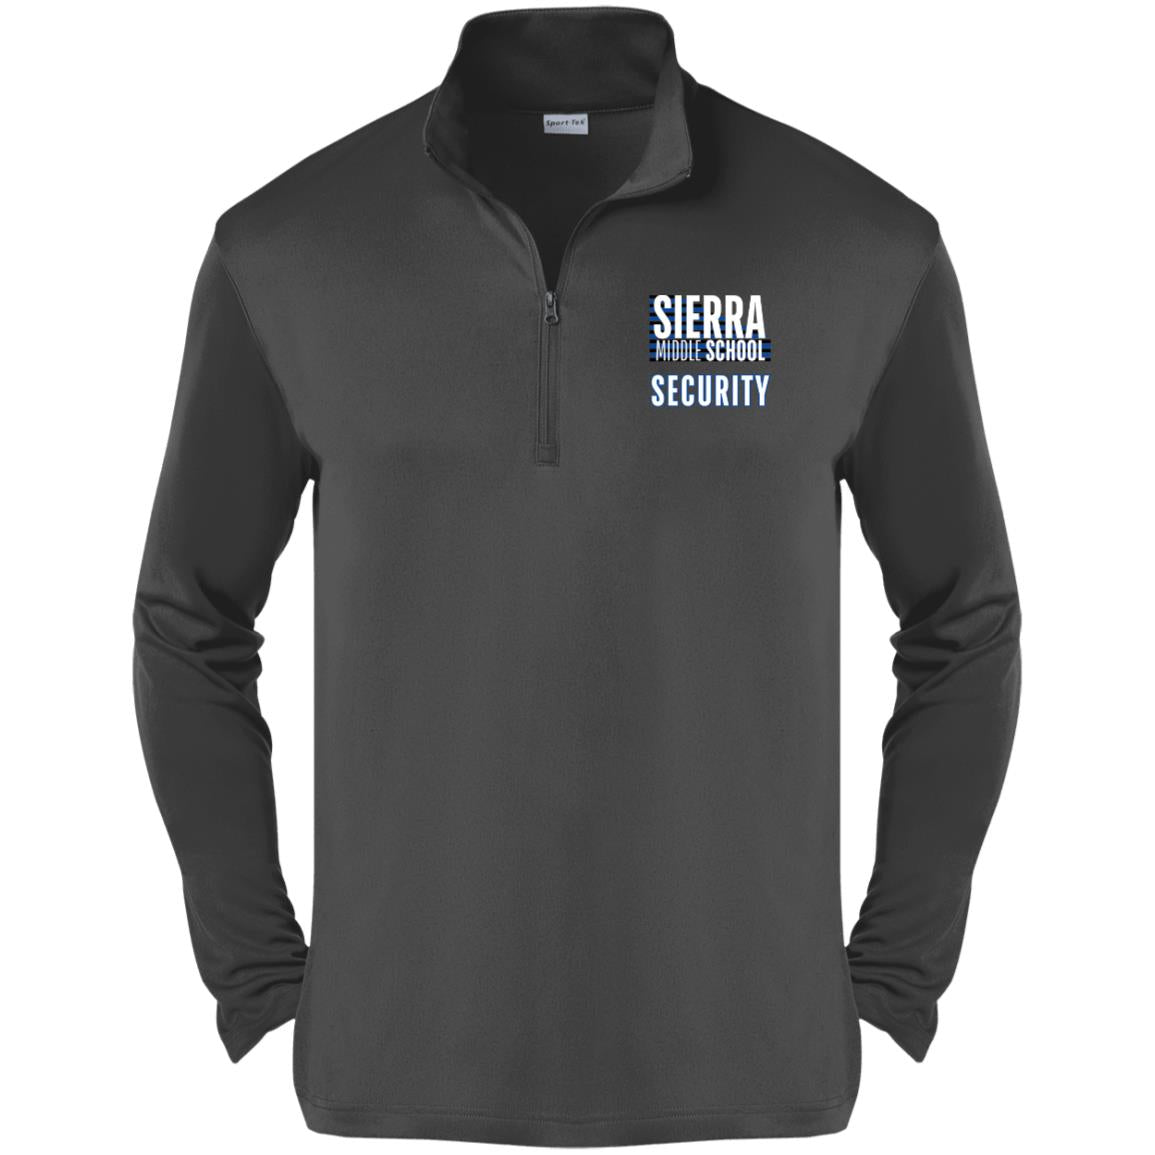 Sierra Security